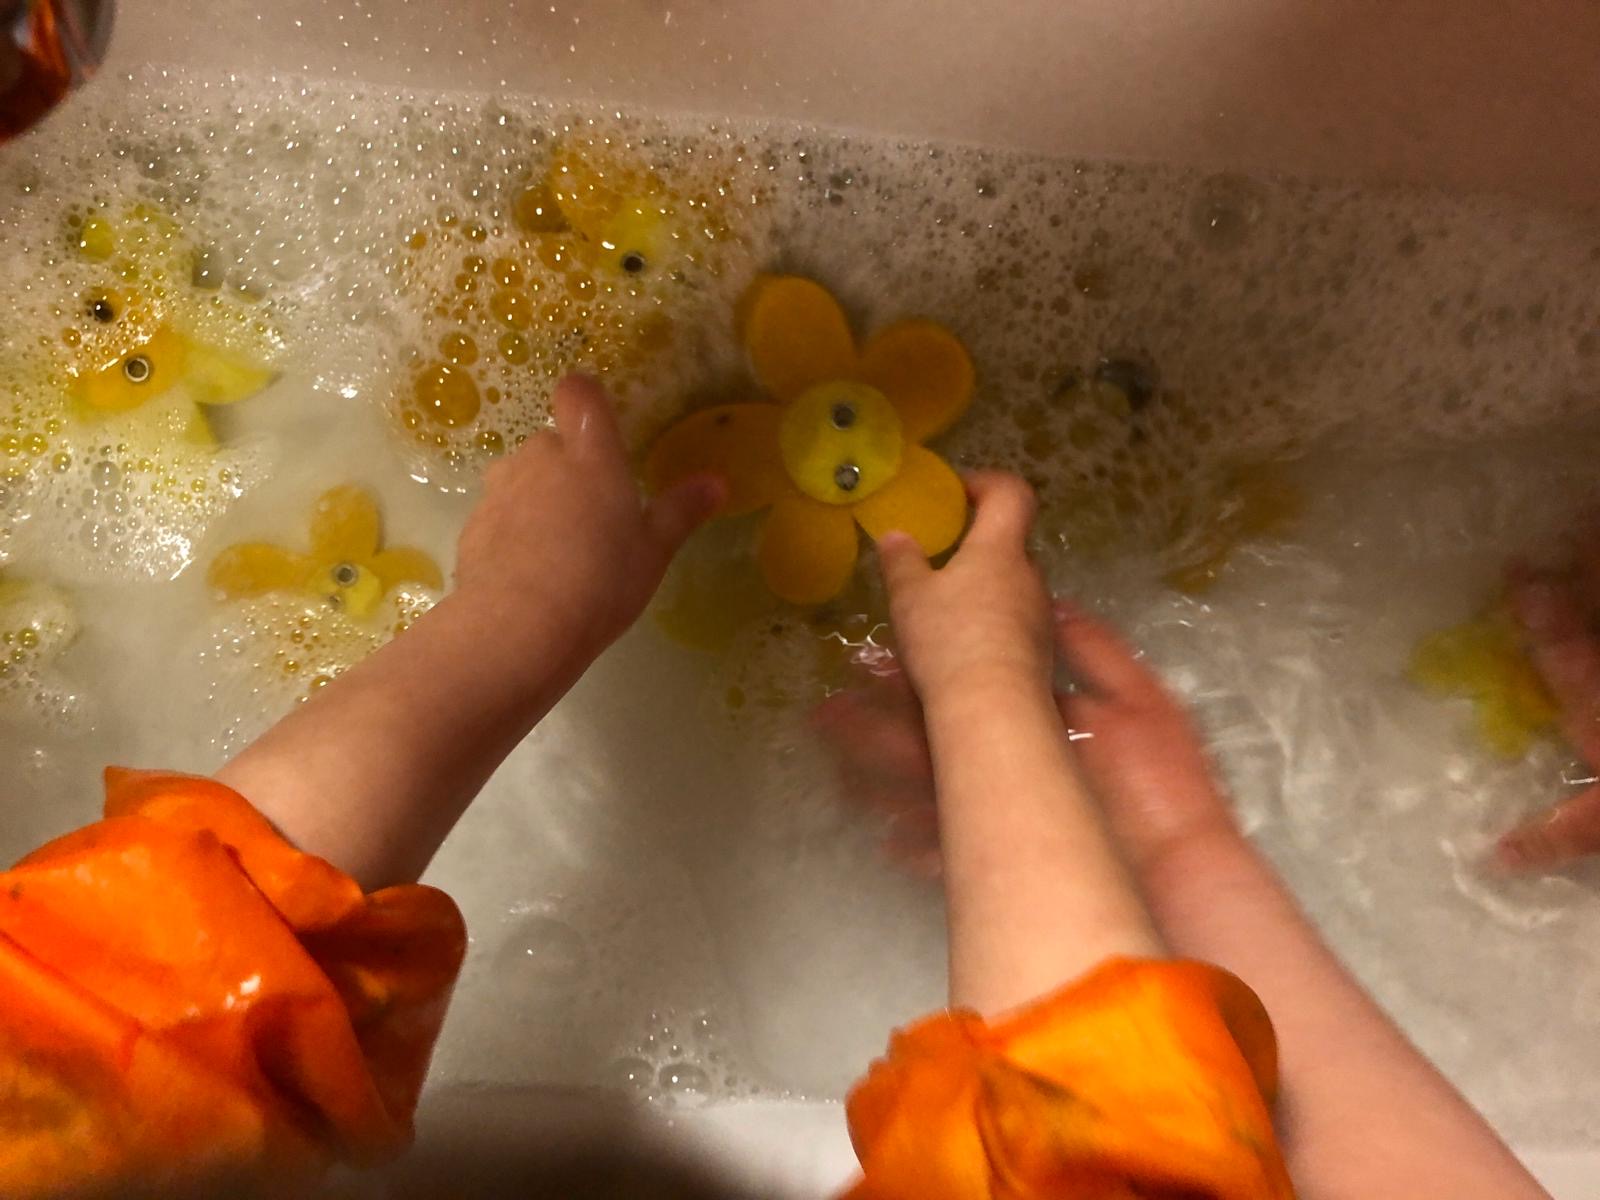 Bild zum Schritt 2 für das Bastel- und DIY-Abenteuer für Kinder: 'Die Kinder legen die Filzblumen hinein und waschen sie vorsichtig.'